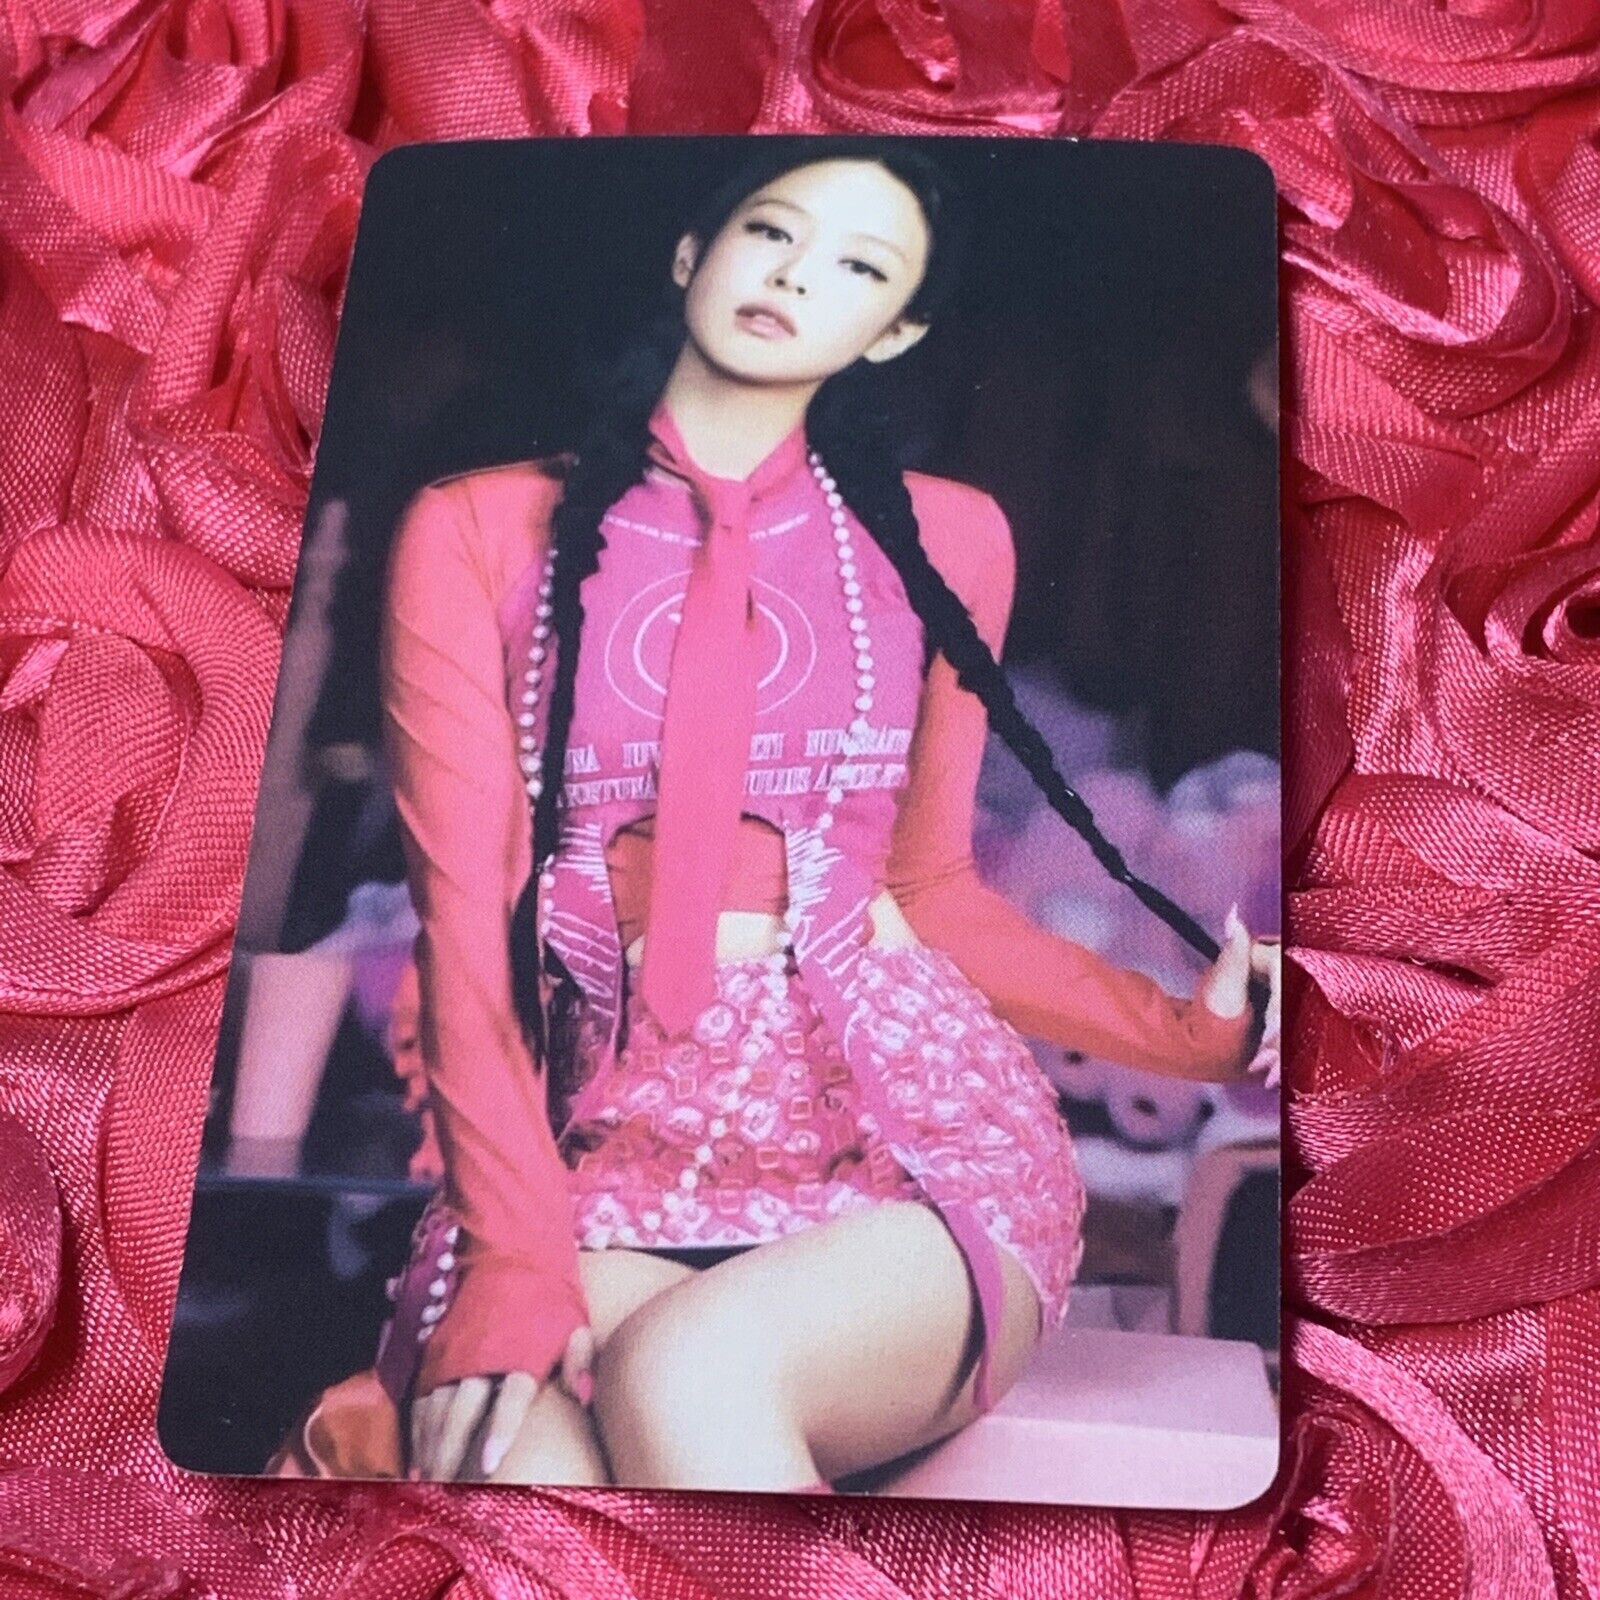 Jennie Blackpink Born Pink Shutdown Edition Photocard, Fan Art Card 2